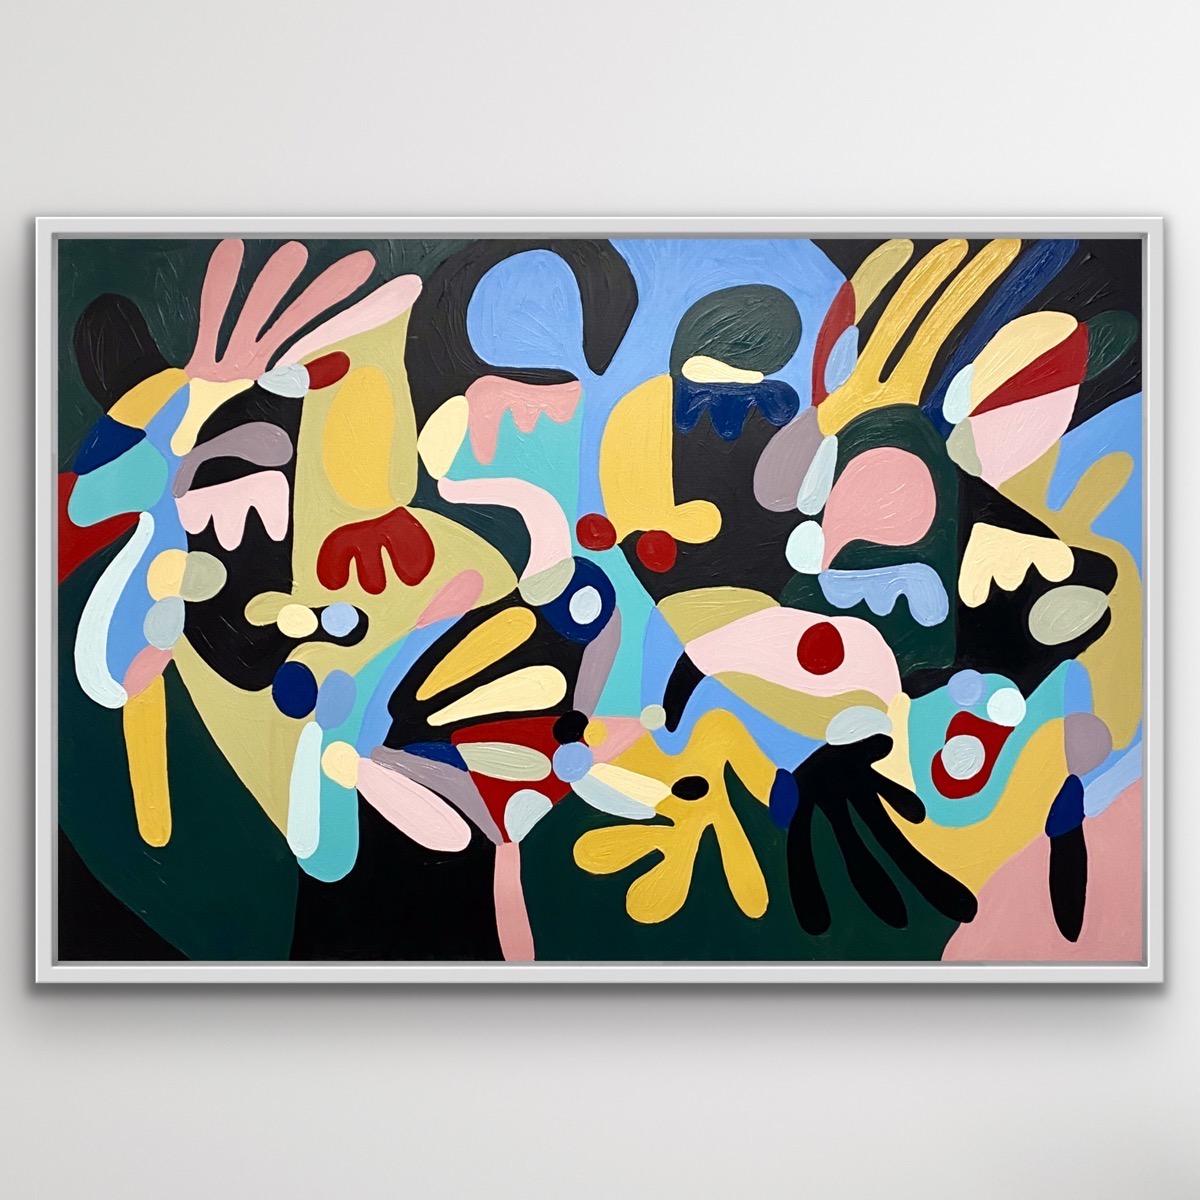 Farben eines Traums, kühnes abstraktes Gemälde im Picasso-Stil, Gemälde im Matisse-Stil (Geometrische Abstraktion), Painting, von Harriet Chomley 